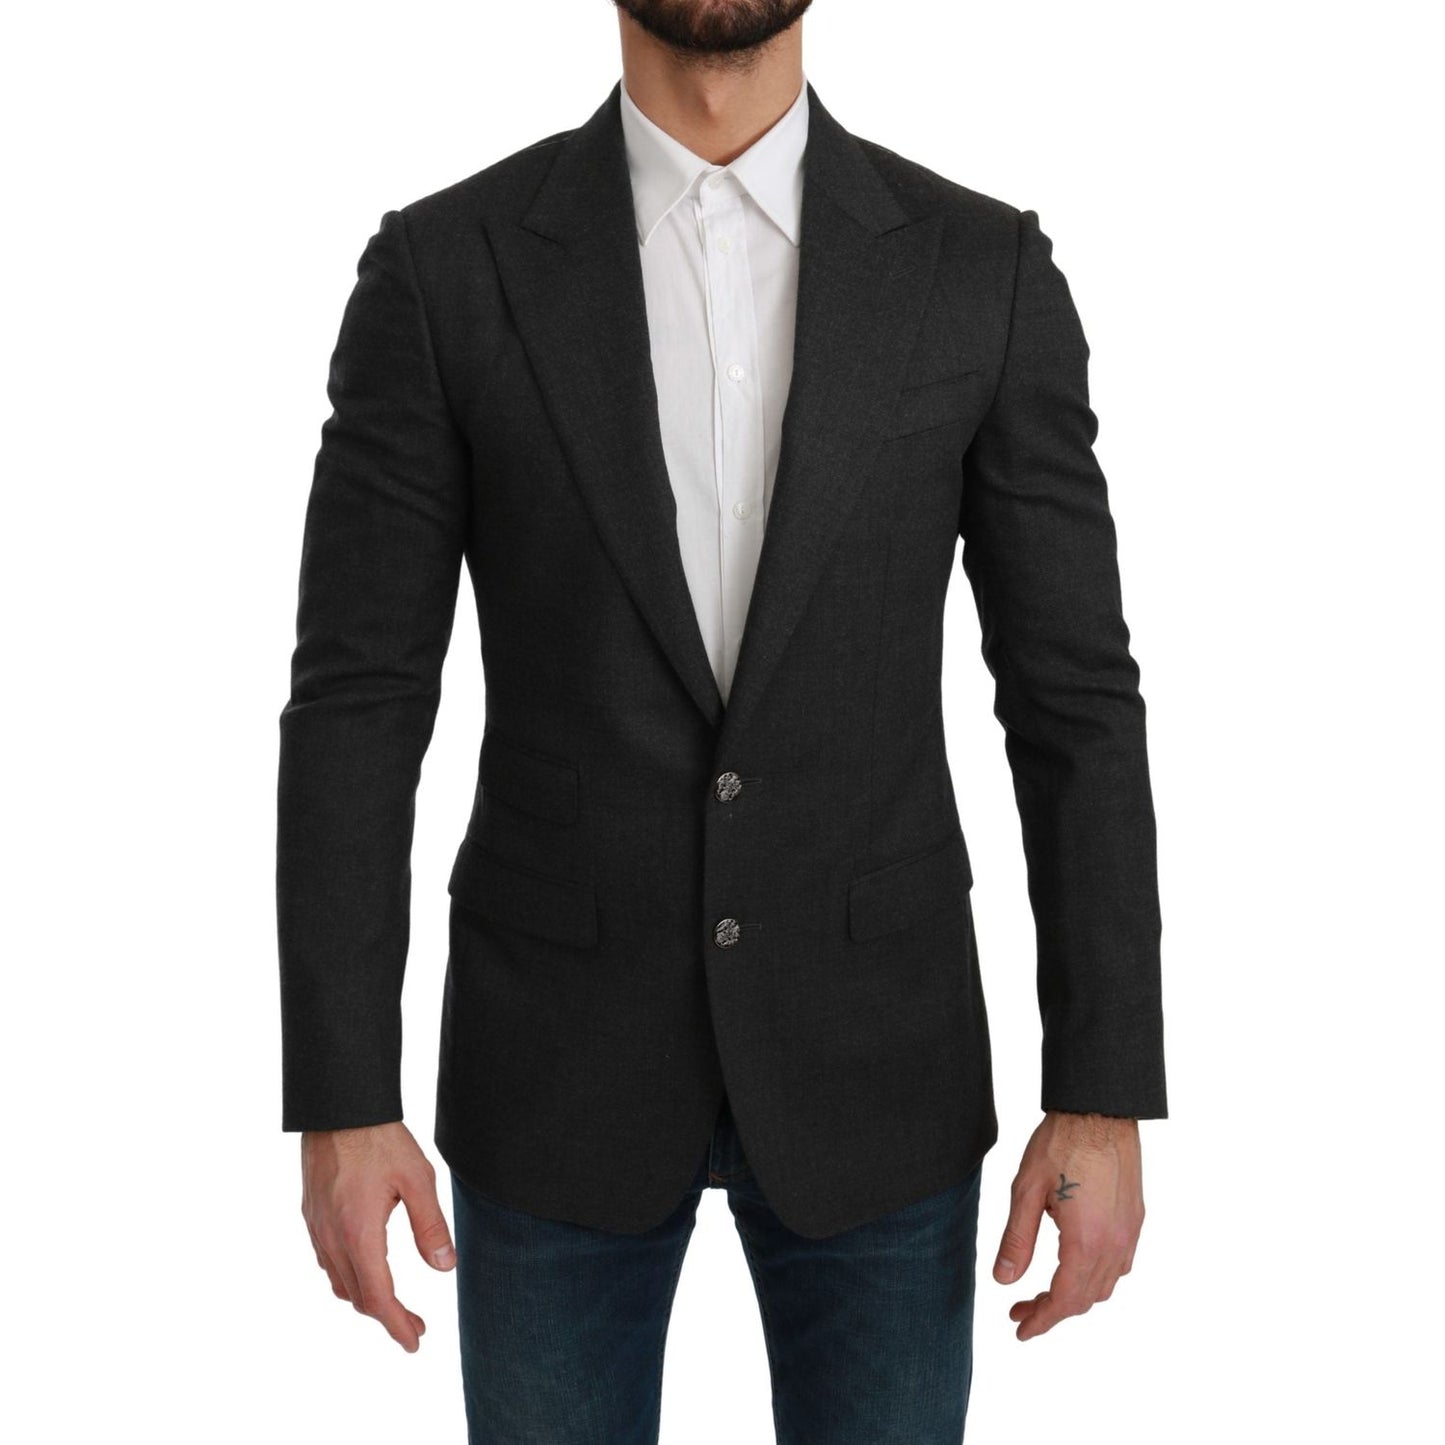 Dolce & Gabbana Elegant Gray Slim Fit Formal Blazer gray-napoli-slim-fit-jacket-wool-blazer IMG_2686-scaled-3051272b-370.jpg